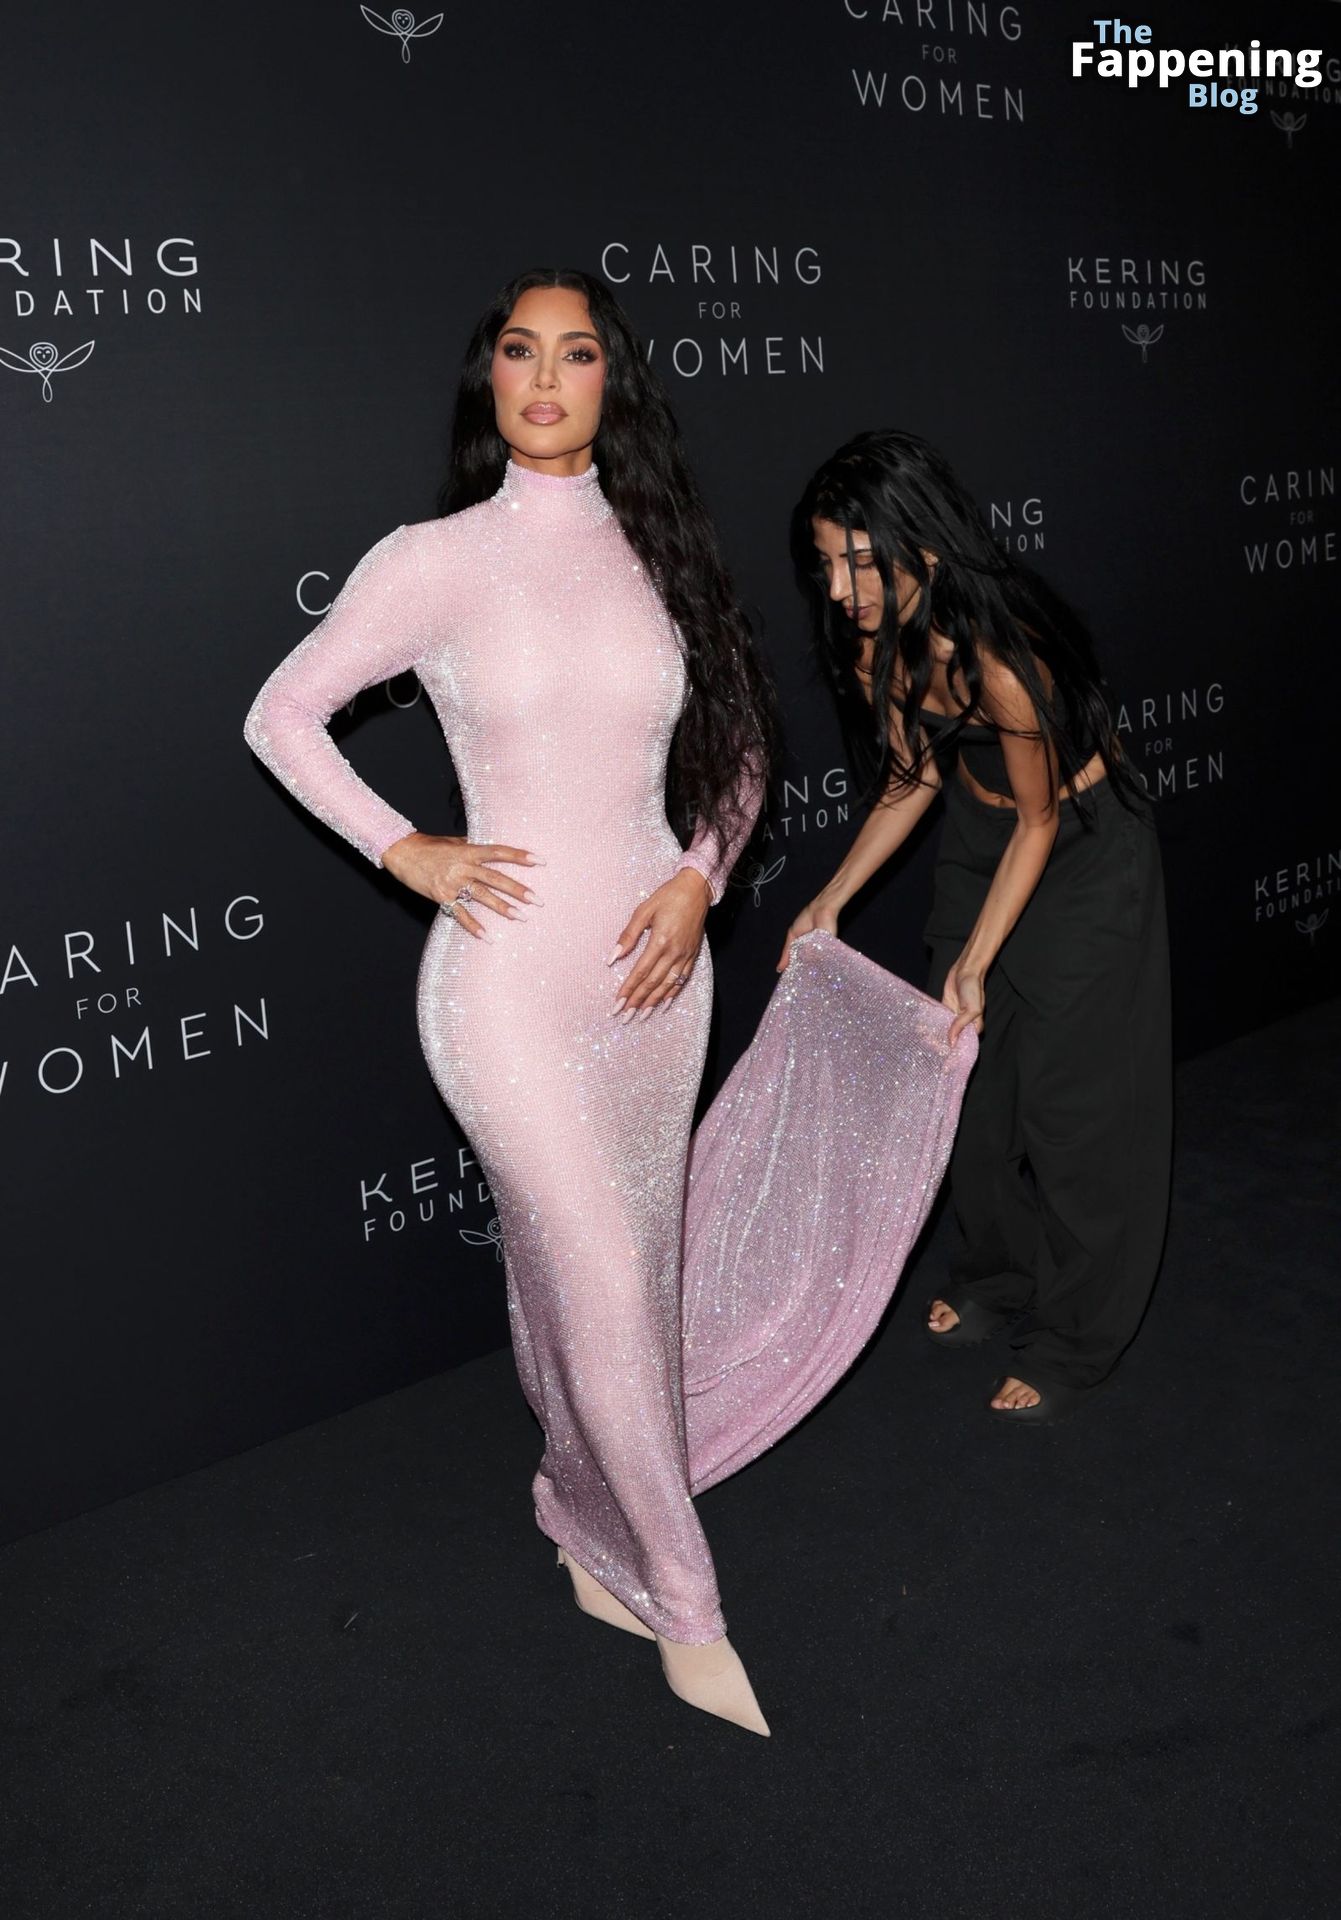 Kim-Kardashian-Sexy-79-The-Fappening-Blog.jpg